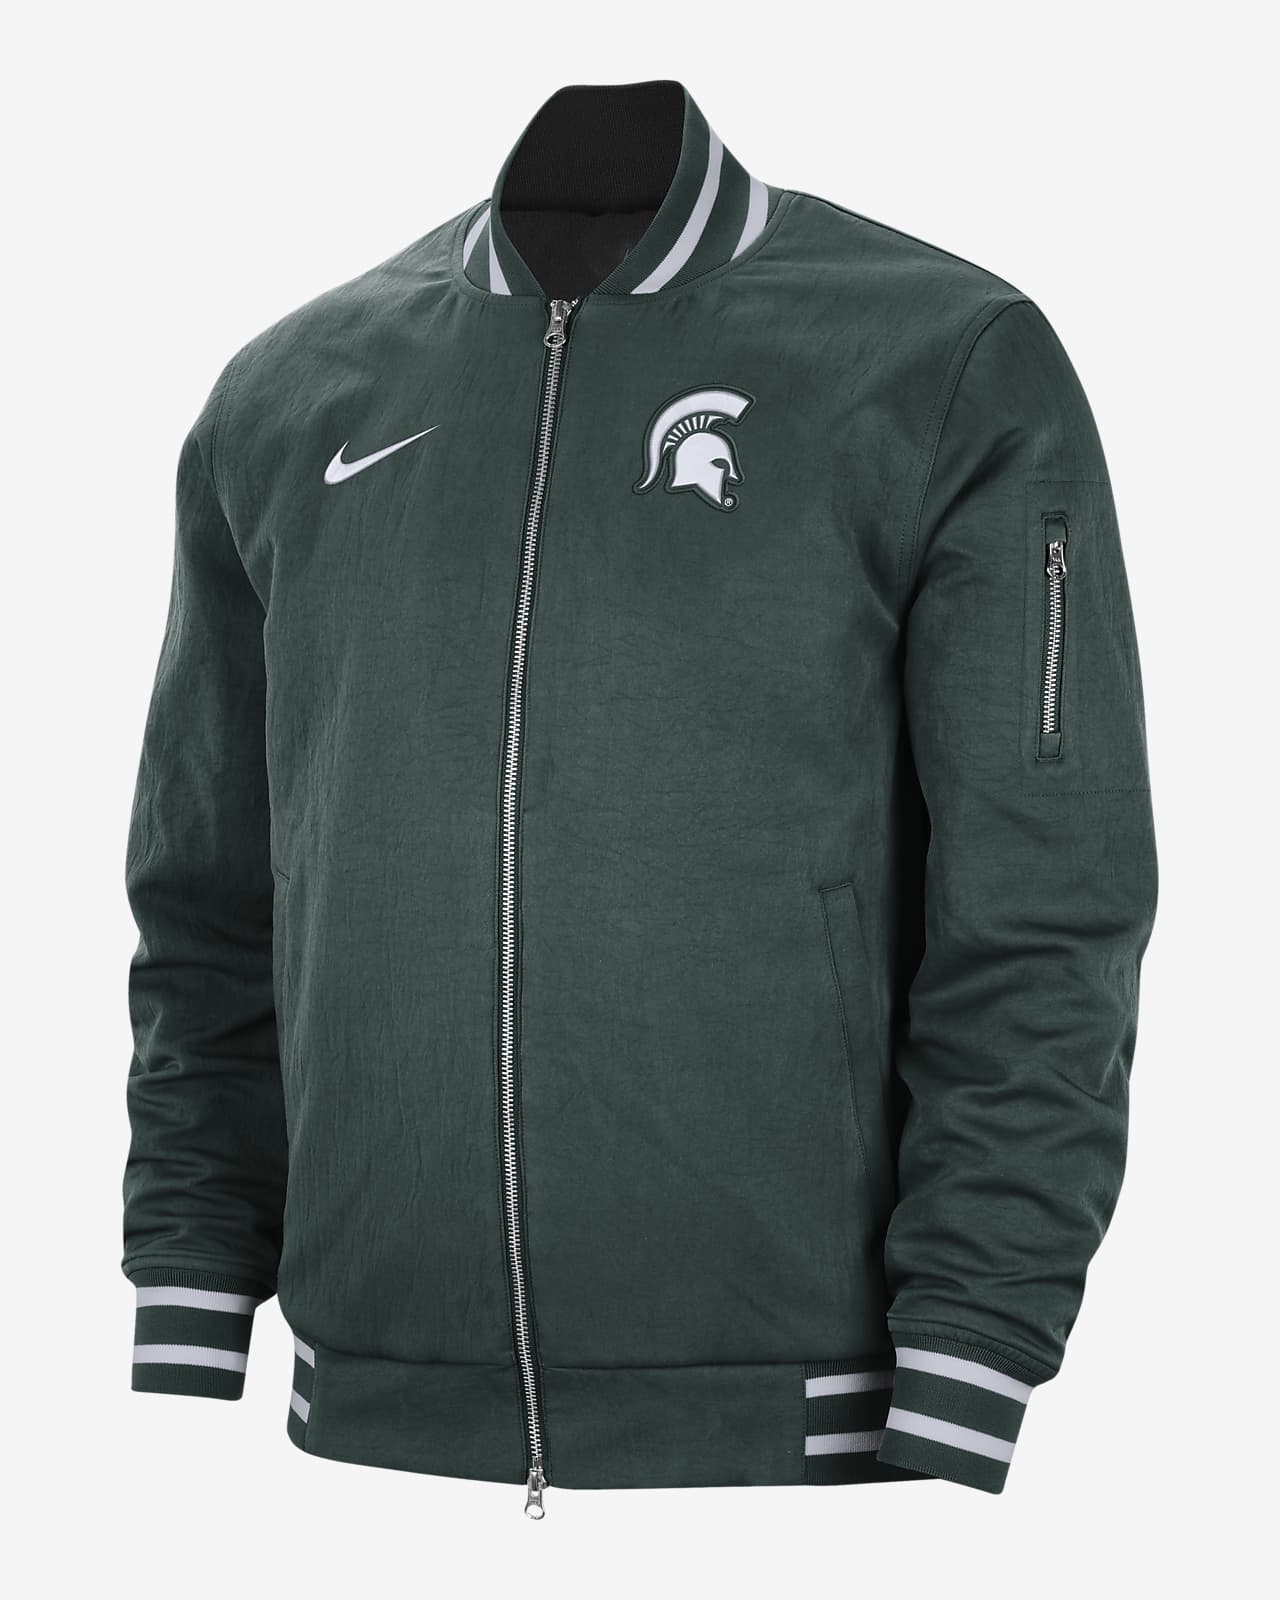 Michigan State Men's Nike College Bomber Jacket